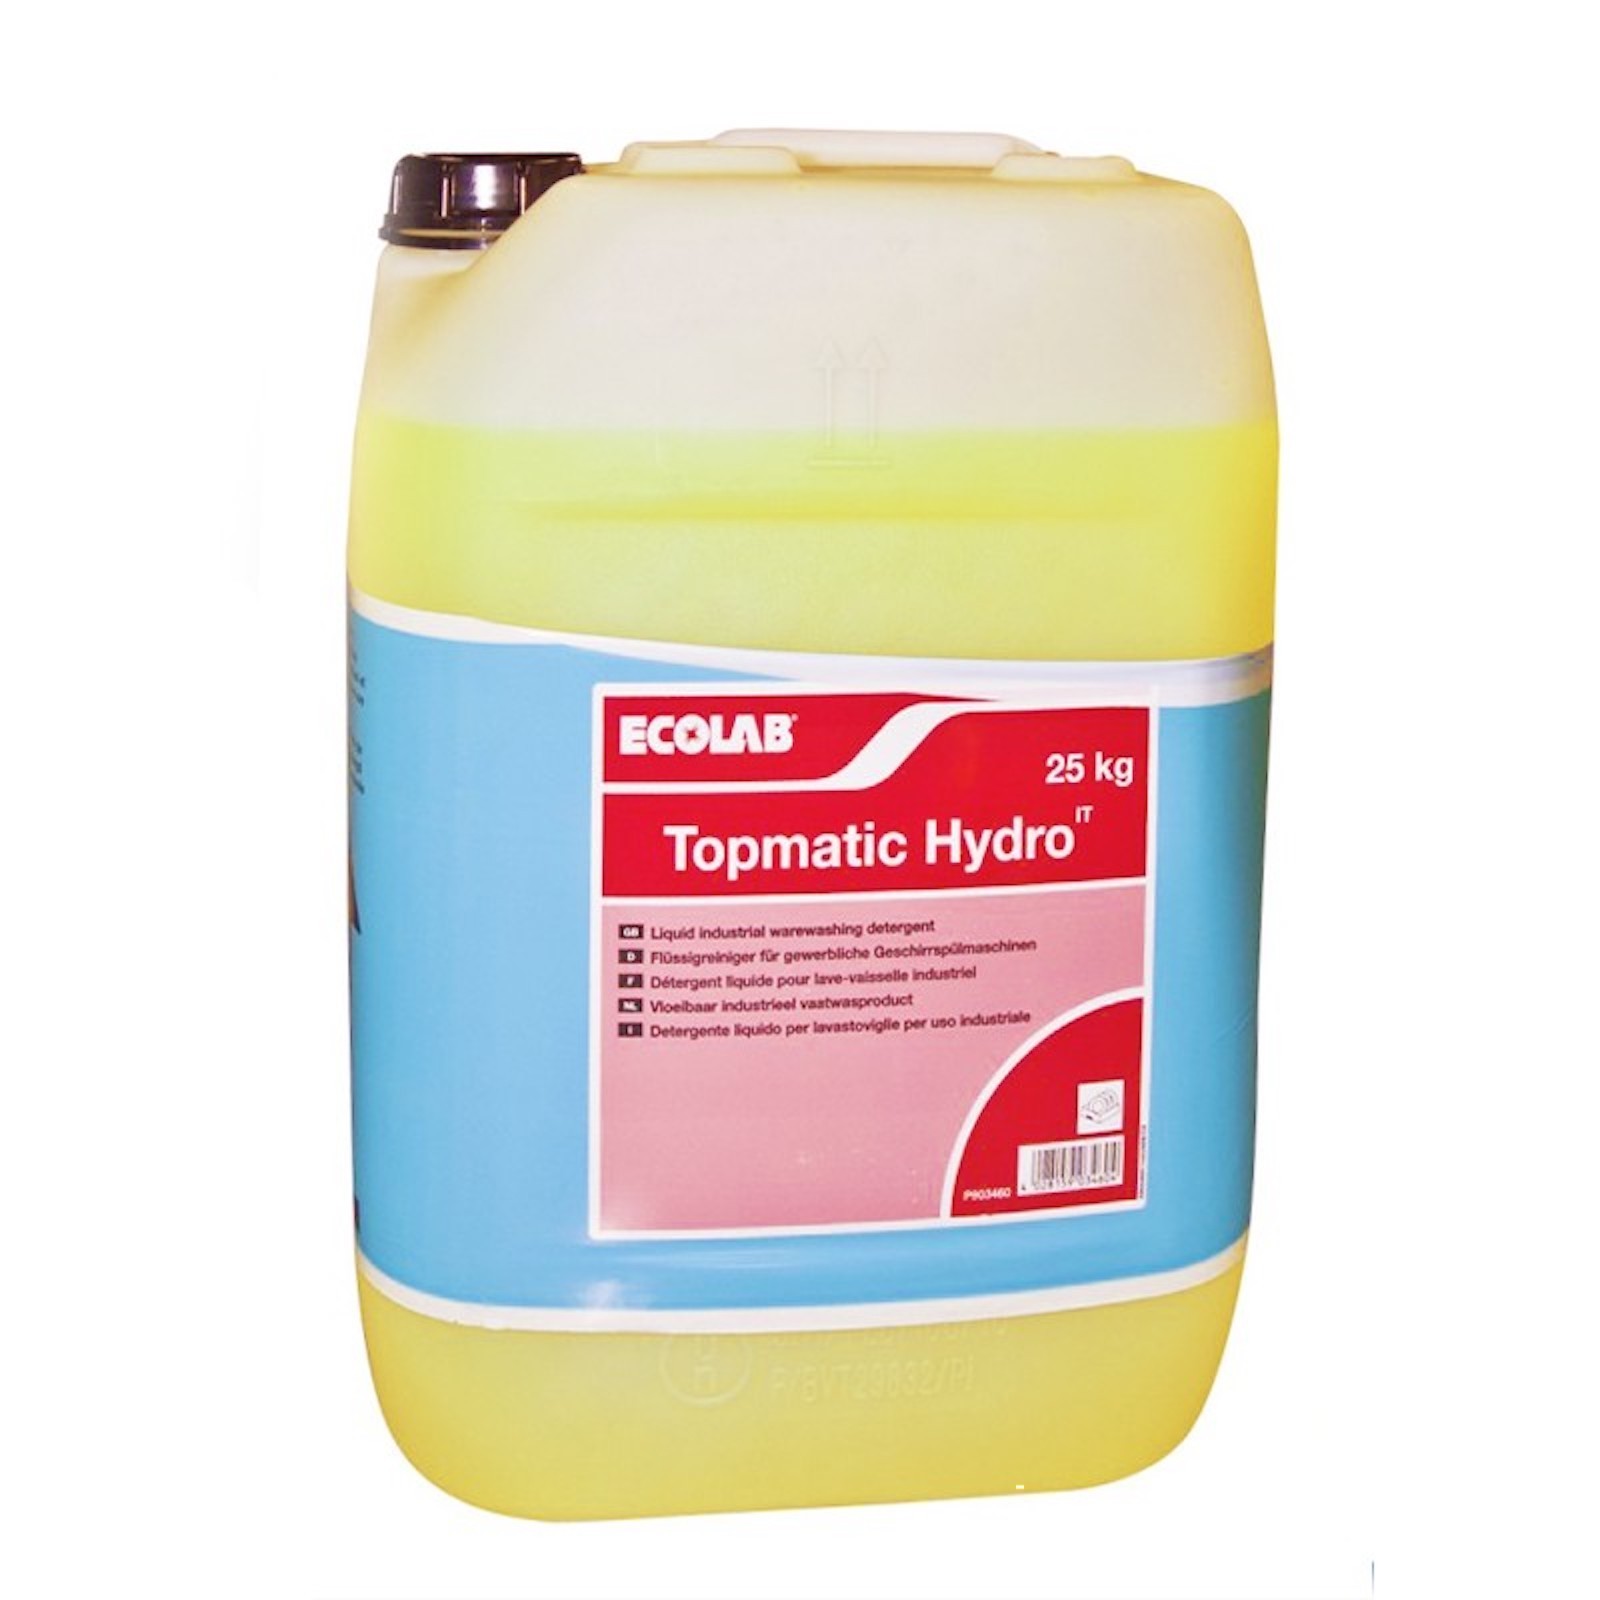 TopMatic Hydro it: detergente liquido lavastoviglie, acque dure